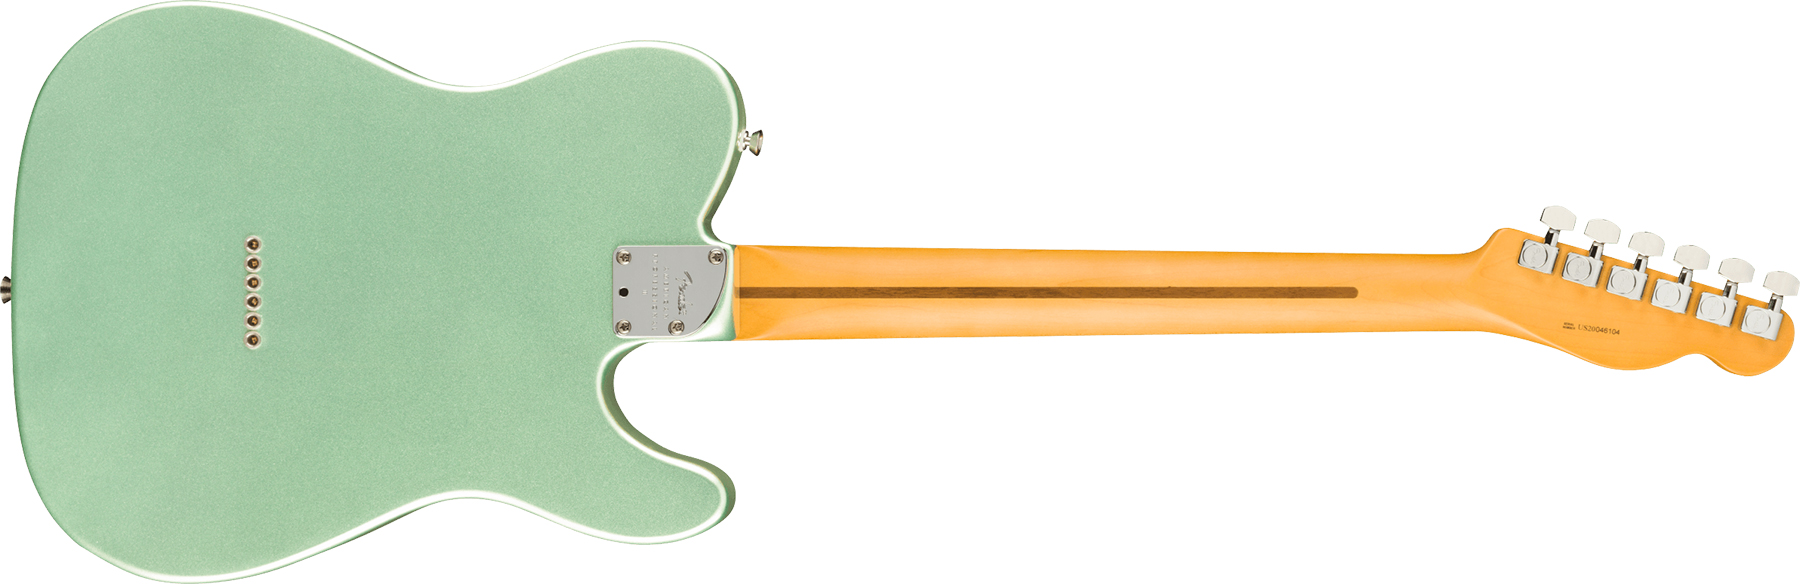 Fender Tele American Professional Ii Lh Gaucher Usa Mn - Mystic Surf Green - E-Gitarre für Linkshänder - Variation 1